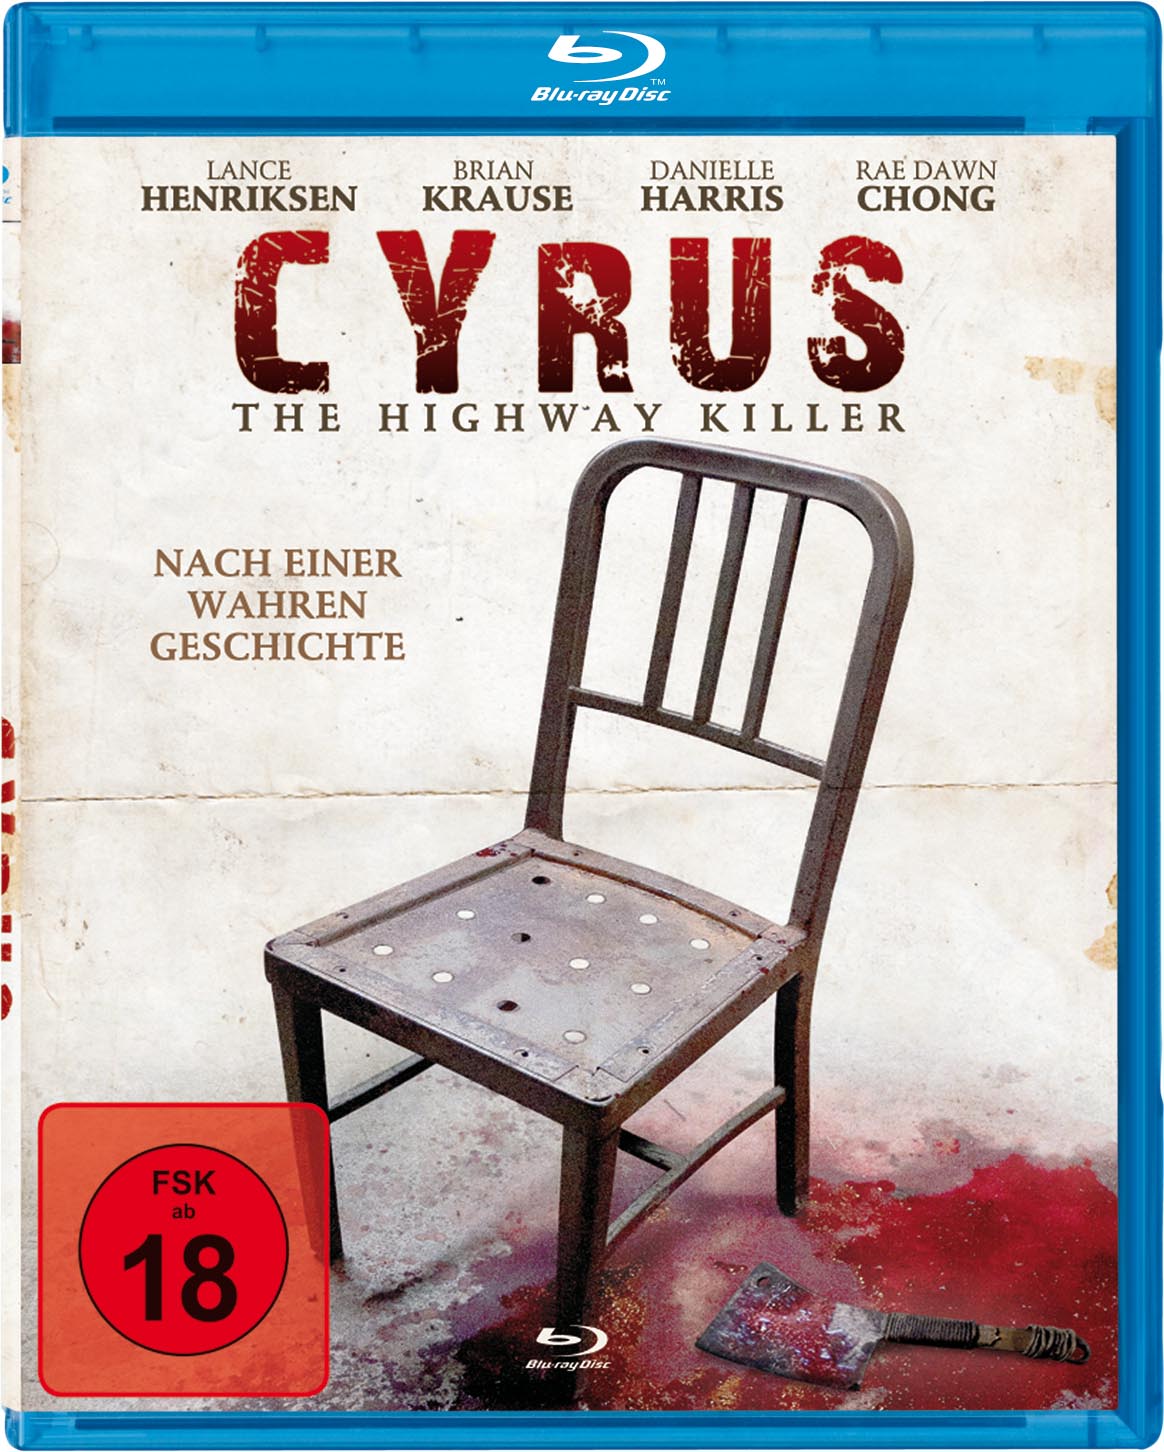 Das Blu-ray-Cover von Cyrus (Quelle: Schröder Media)